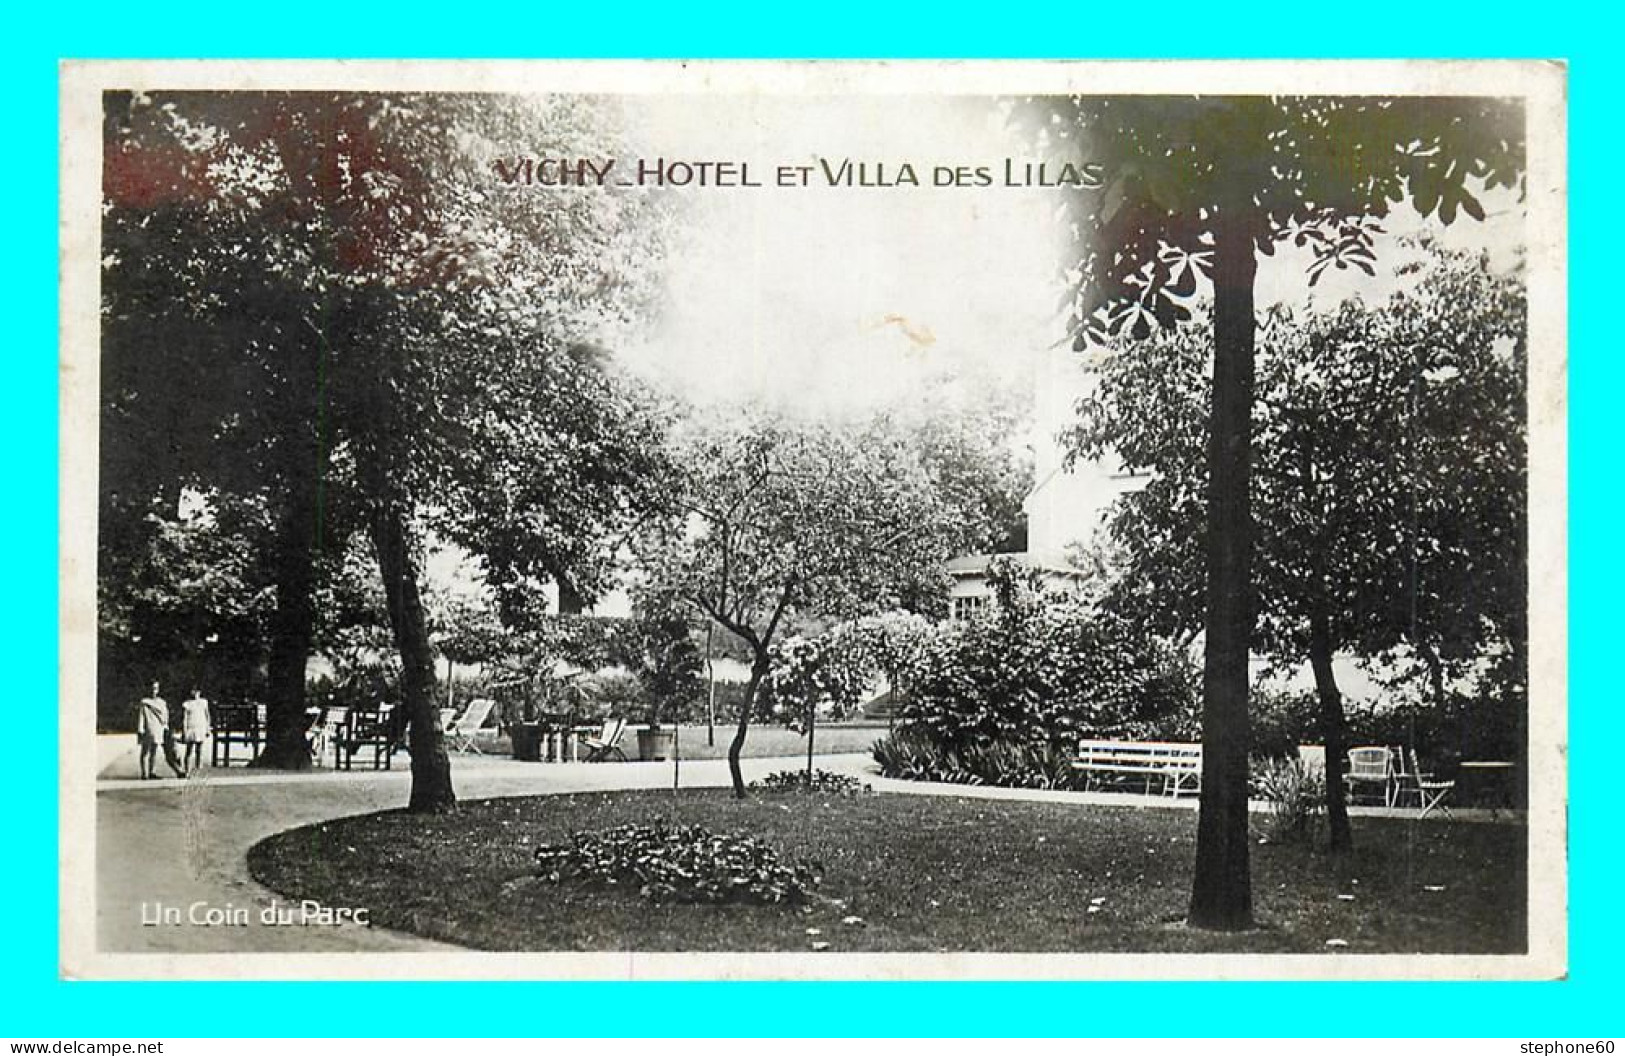 A808 / 011 03 - VICHY Hotel Et Villa Des Lilas - Vichy